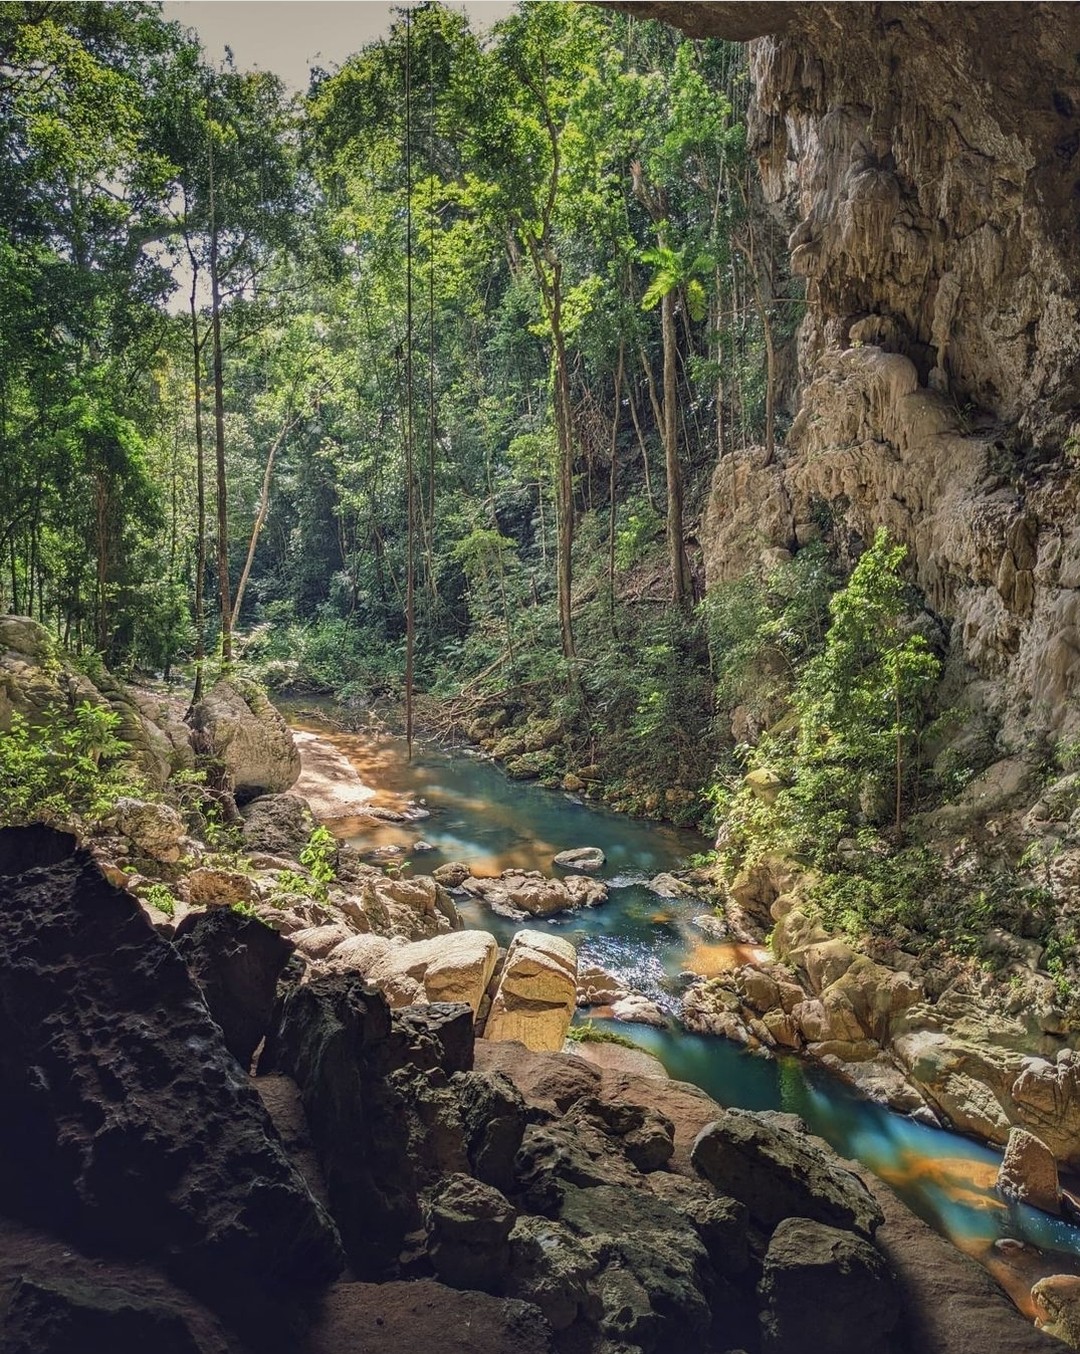 L'ouest du Belize abrite un vaste réseau de grottes qui servaient autrefois de lieux de culte, de rituels et de sépultures aux anciens Mayas. Ne manquez pas d'ajouter l'une des nombreuses grottes à votre itinéraire à l'intérieur des terres. #travelbelize???? : @wanderesswithastory